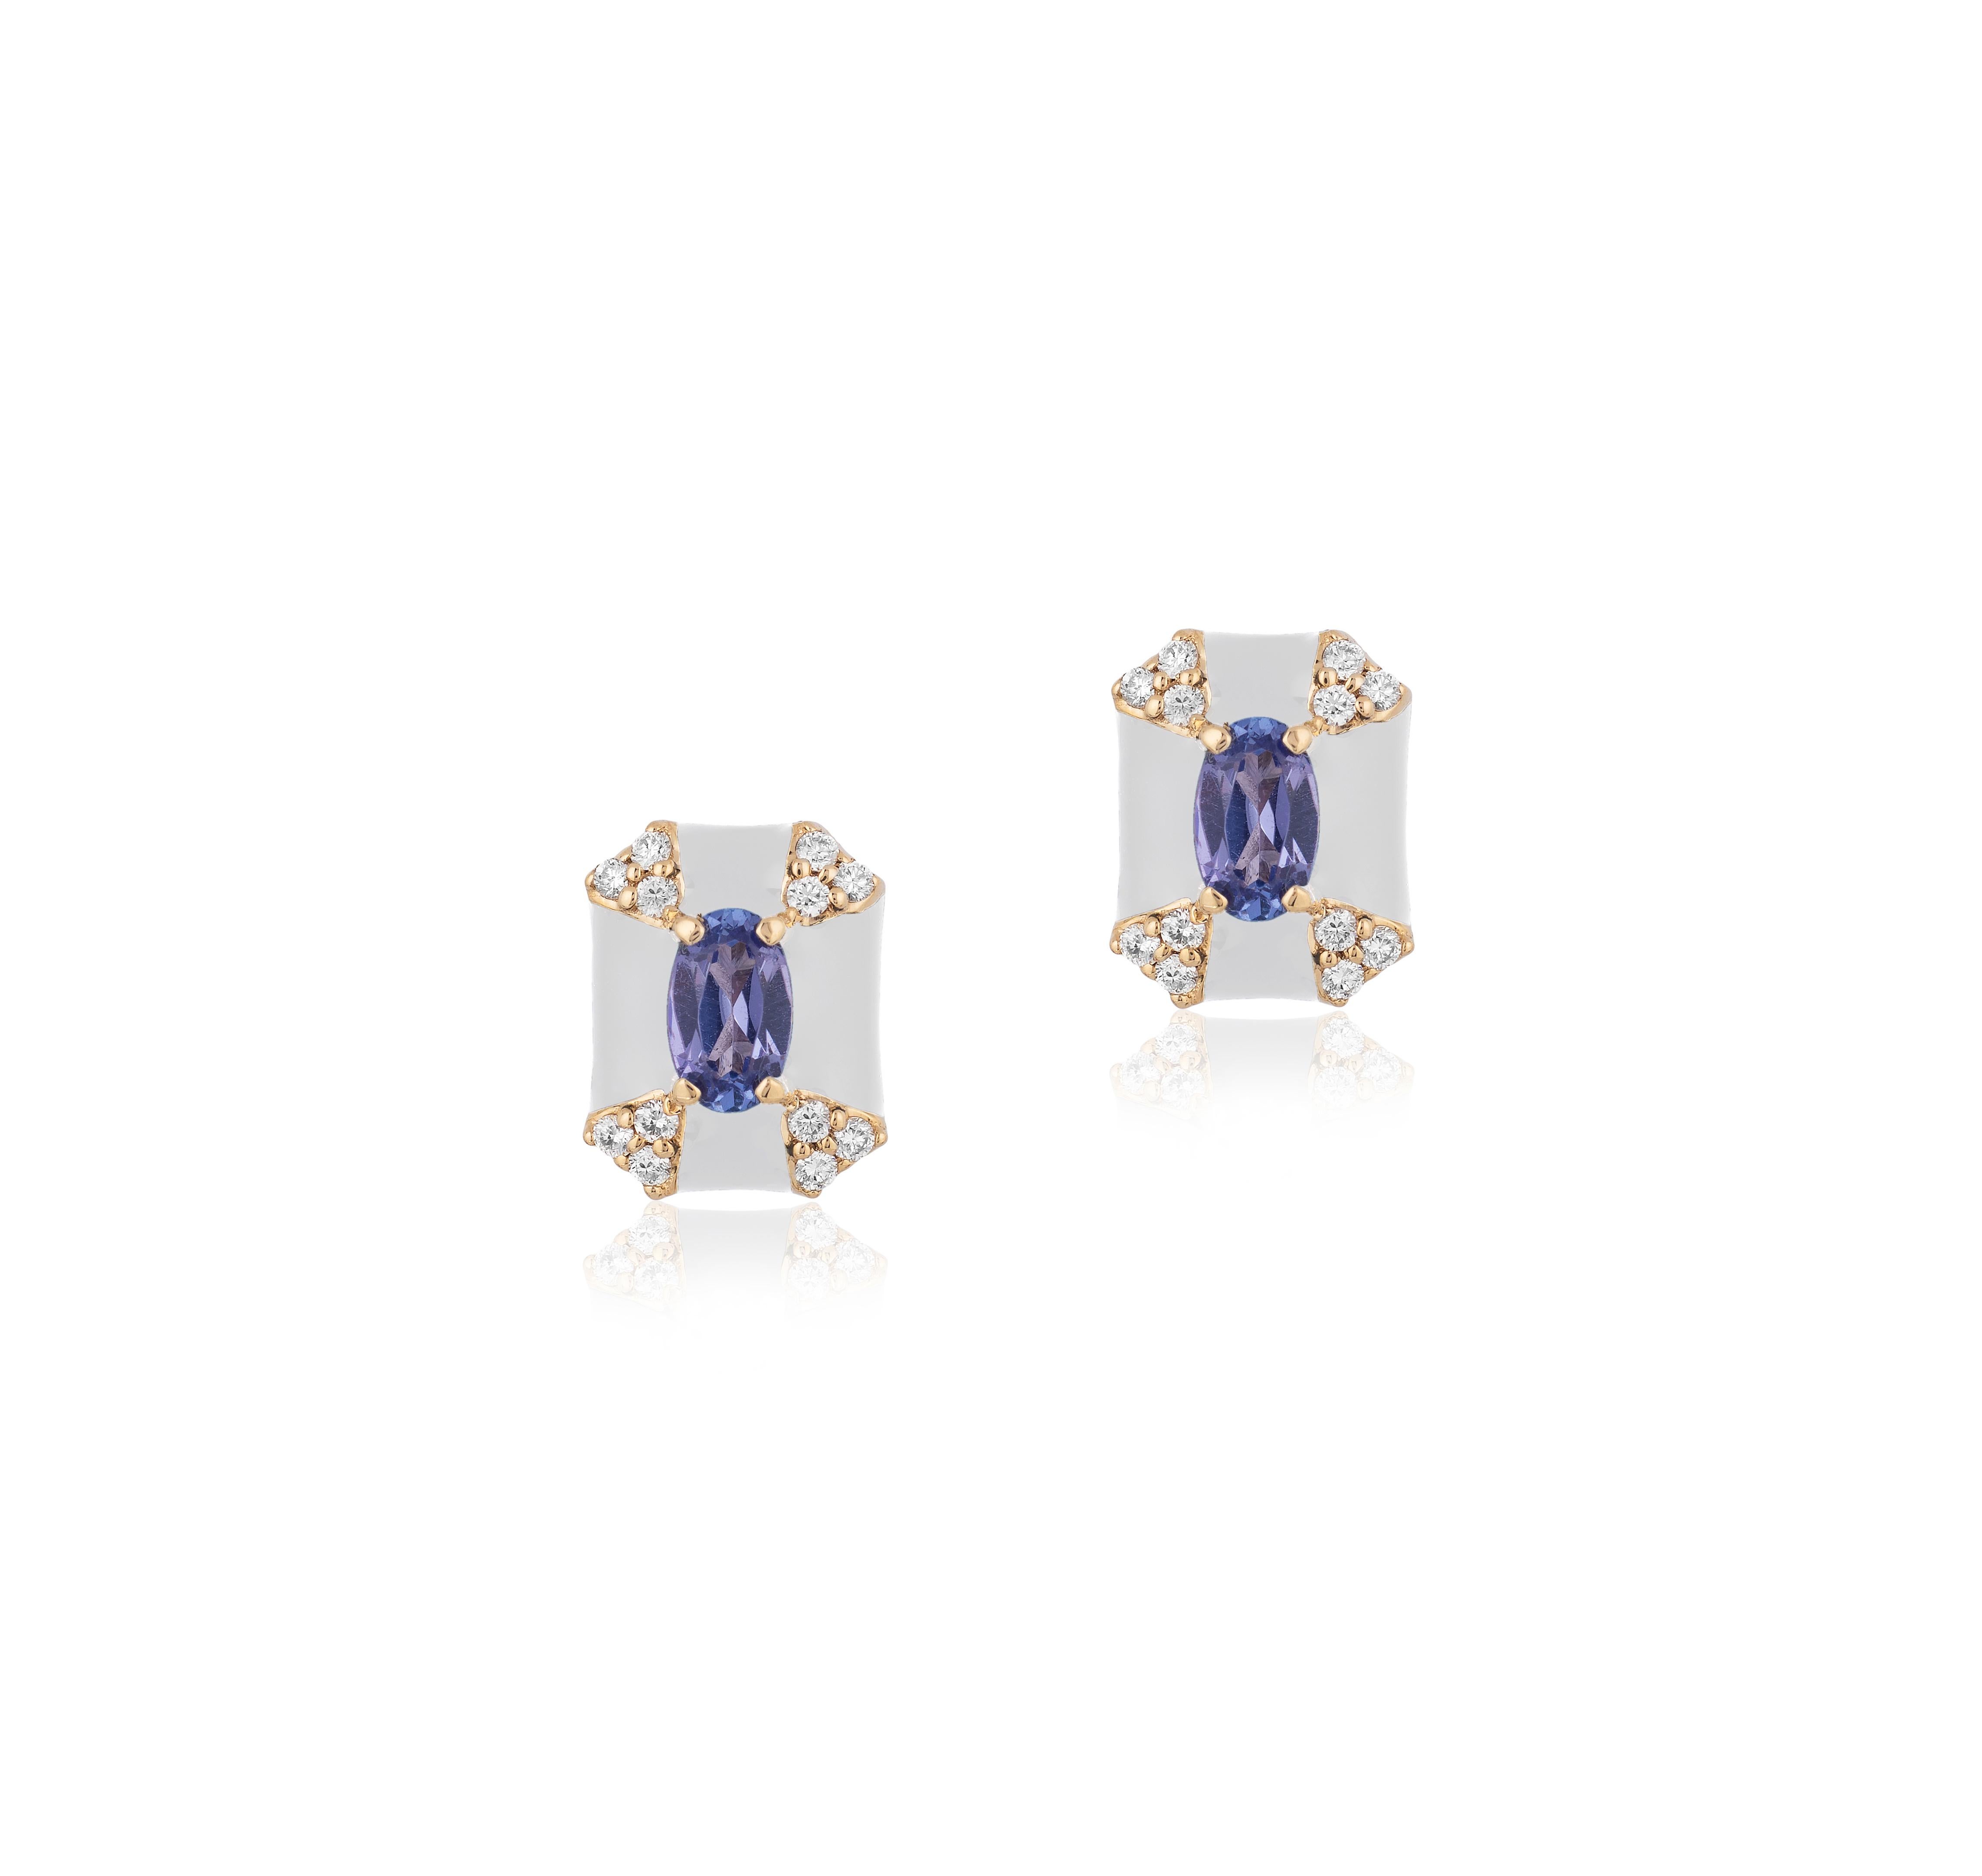 Boucles d'oreilles 'Queen' en émail blanc octogonal avec saphir et diamants en or jaune 18 carats.
Taille de la pierre : 4 mm
Pierre précieuse Approx. Poids Saphir - 0,62 carats 
Diamants : G-H / VS, Approx. Poids 0.14 Carats